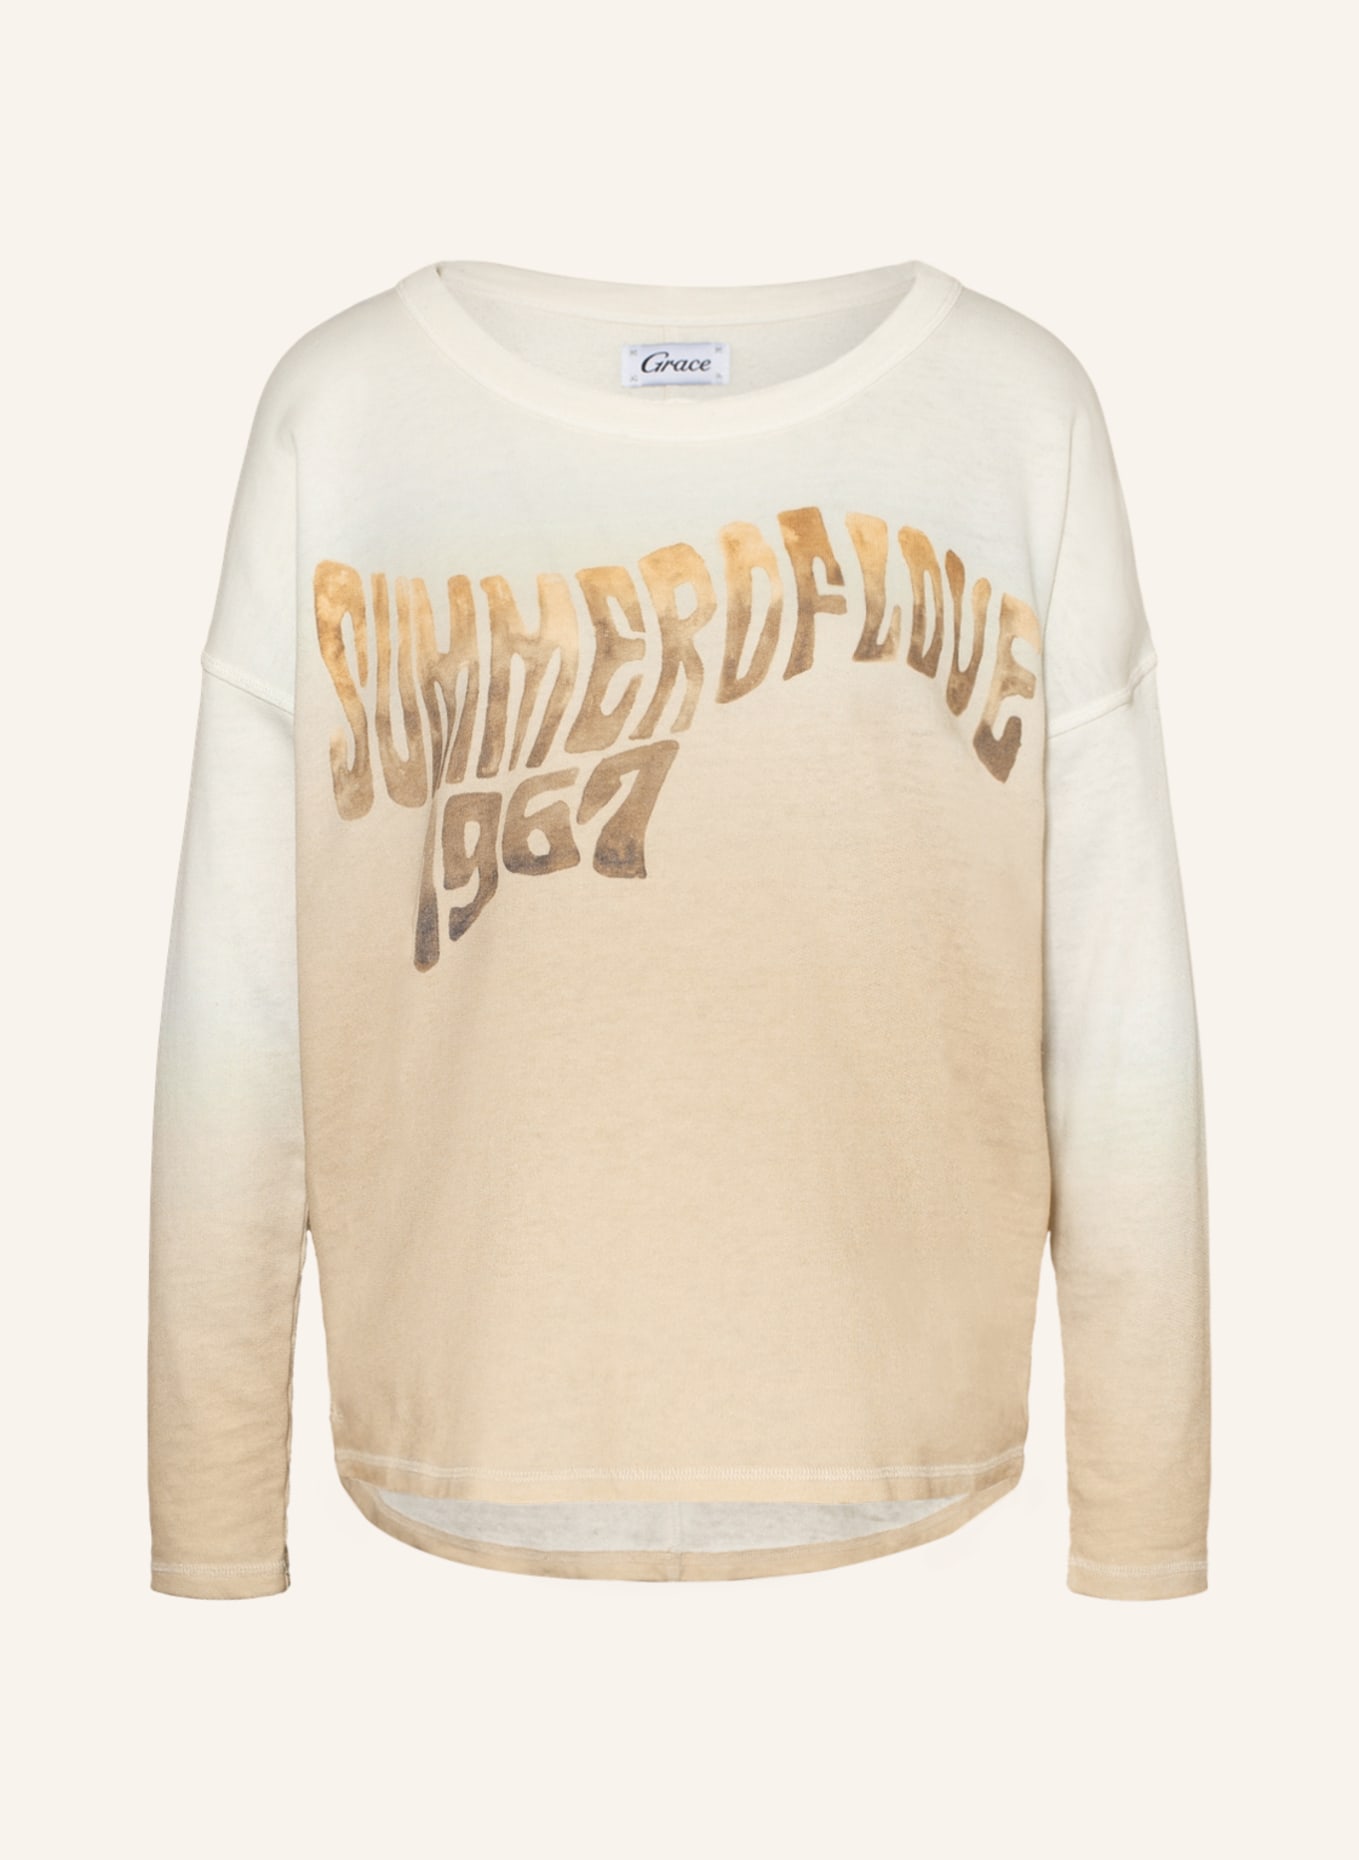 Grace Sweatshirt, Color: BEIGE/ CREAM (Image 1)